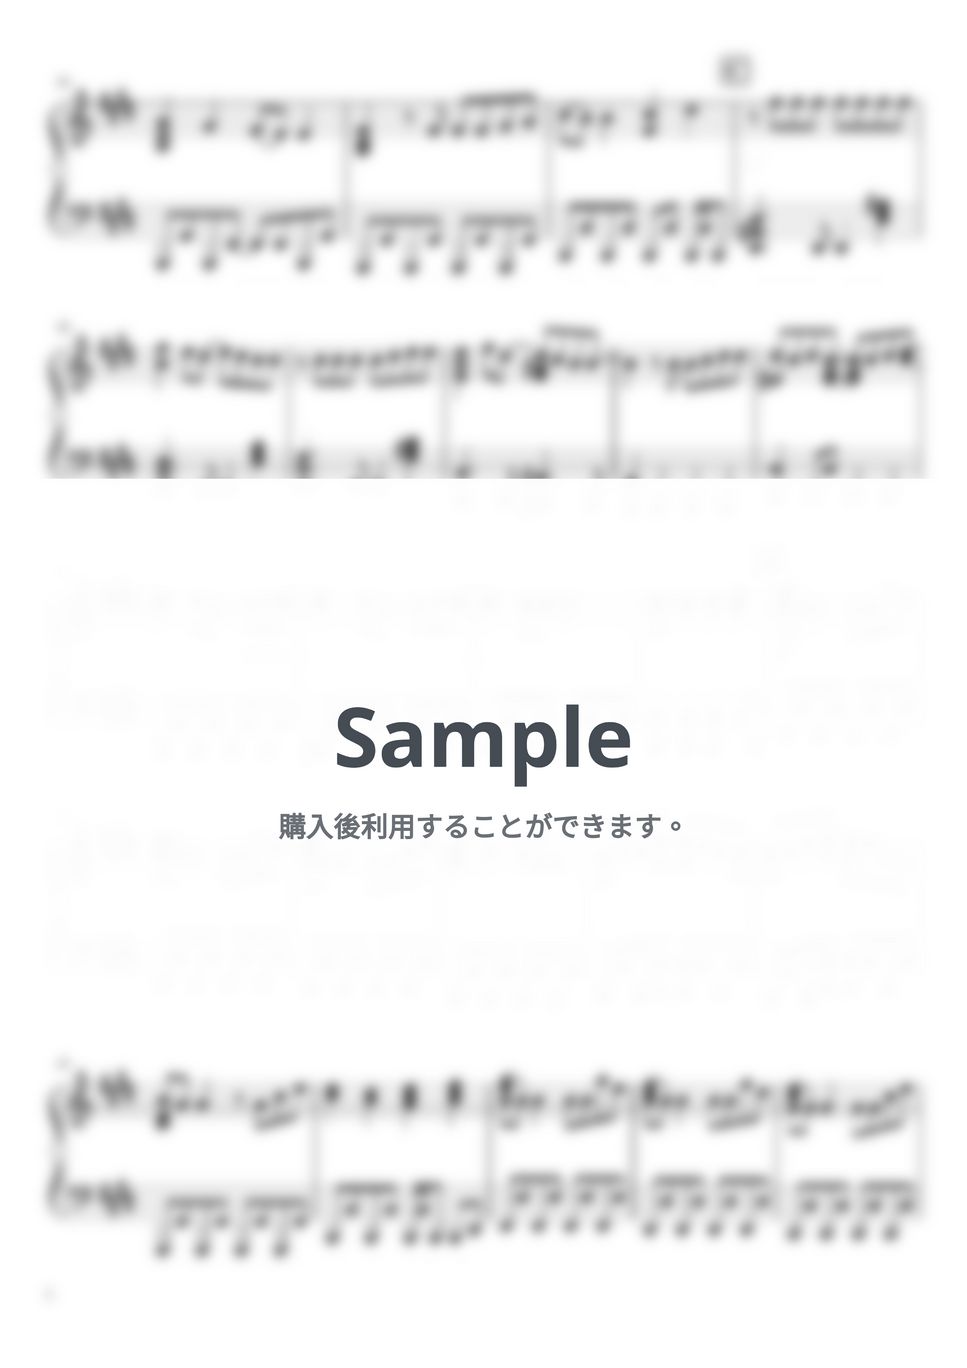 なにわ男子 - I Wish (6th Single「I Wish」/ピアノソロFull/「マイ・セカンド・アオハル」主題歌) by ピアノぷりん